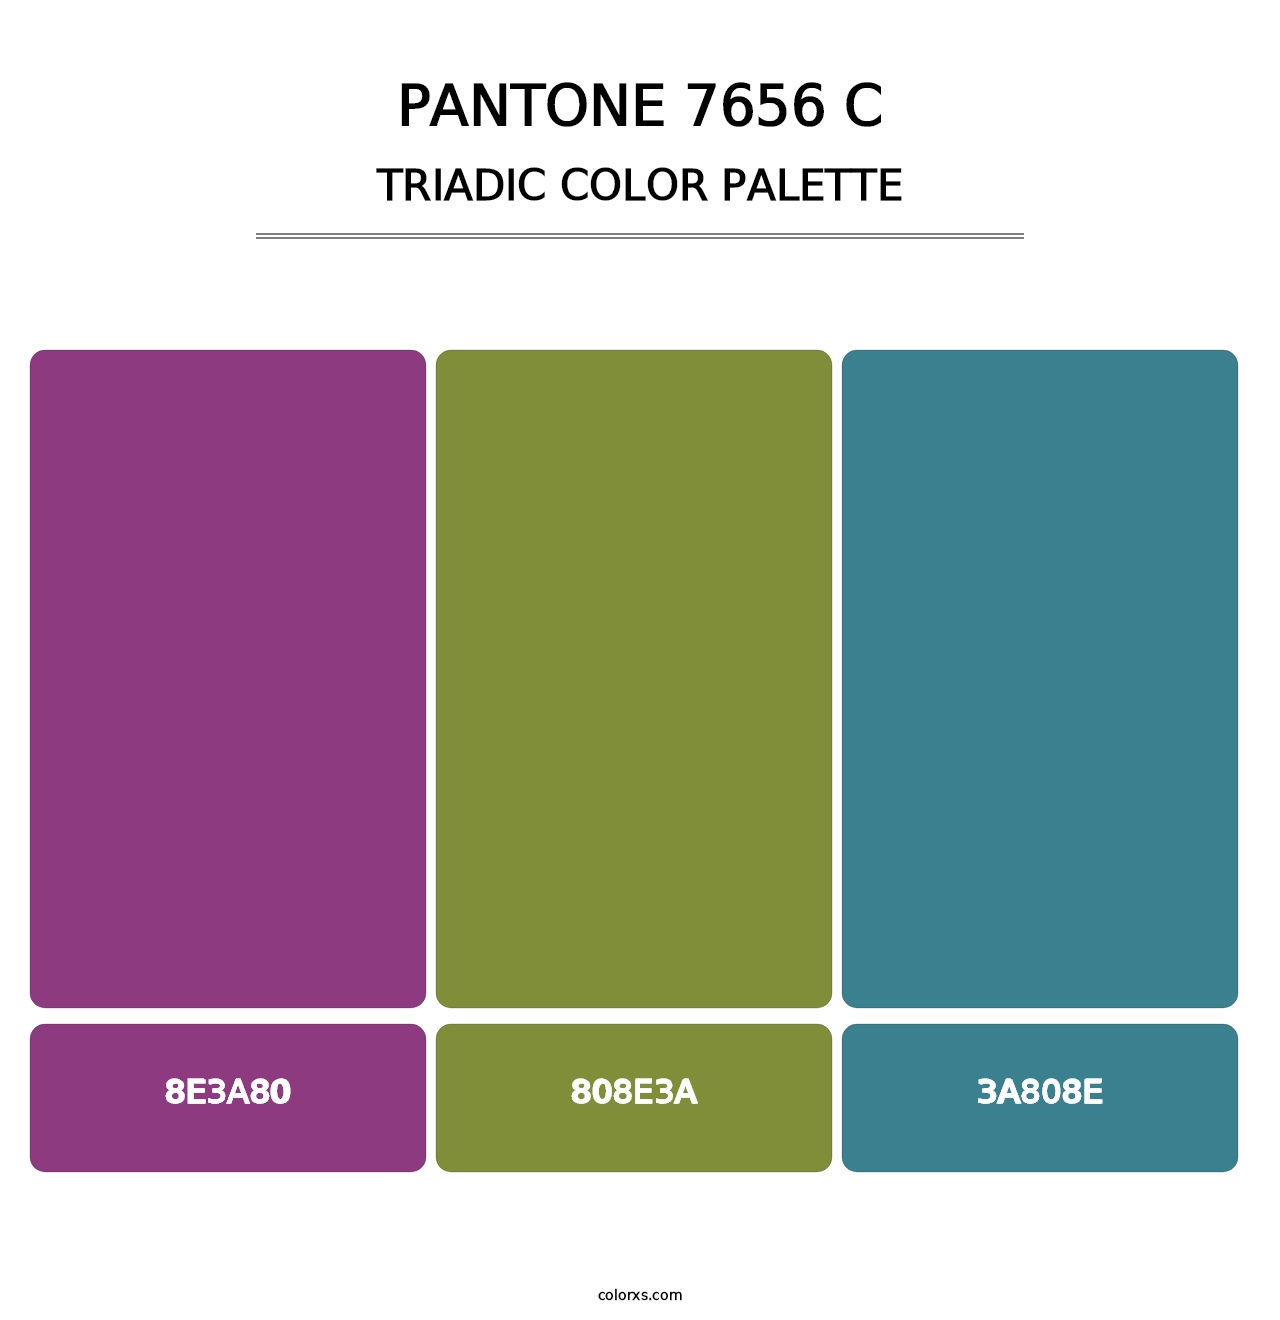 PANTONE 7656 C - Triadic Color Palette